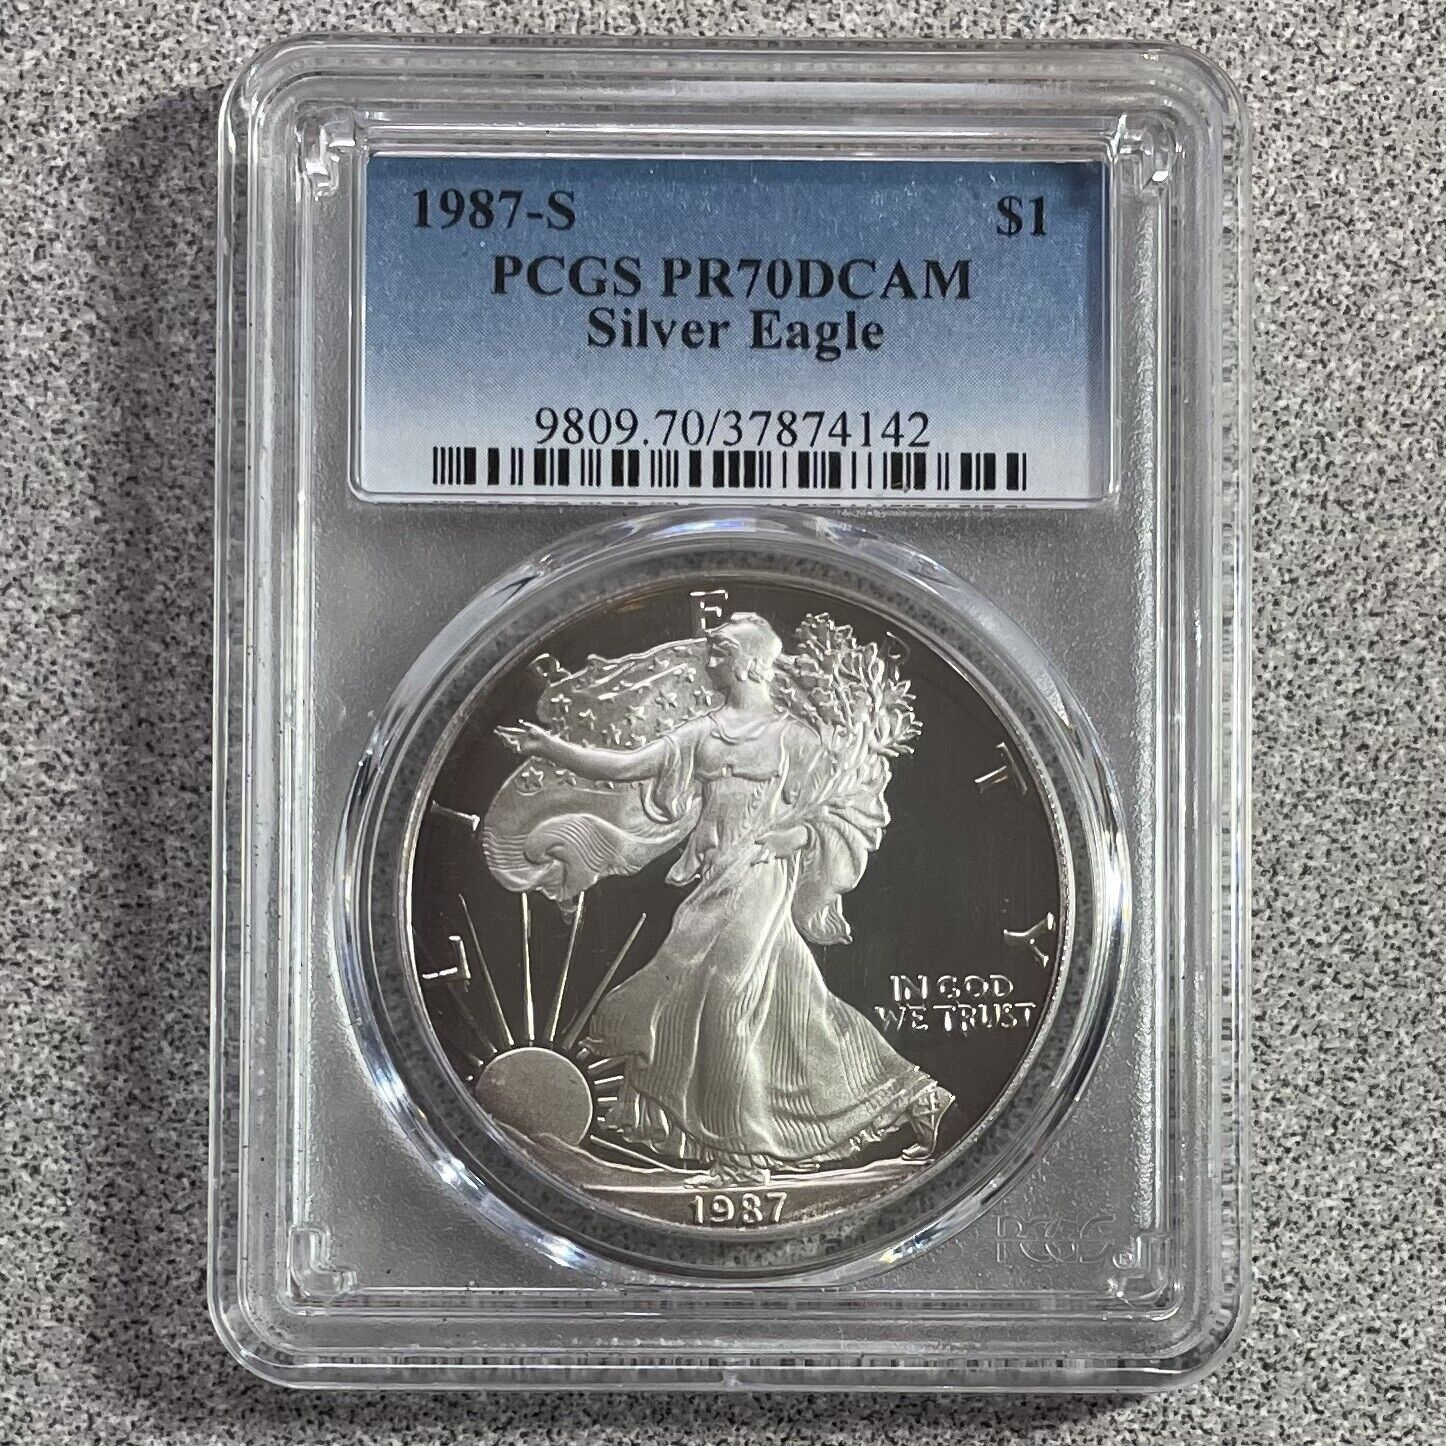  アンティークコイン コイン 金貨 銀貨  [送料無料] 1987-S American Silver Eagle PCGS PR70DCAM